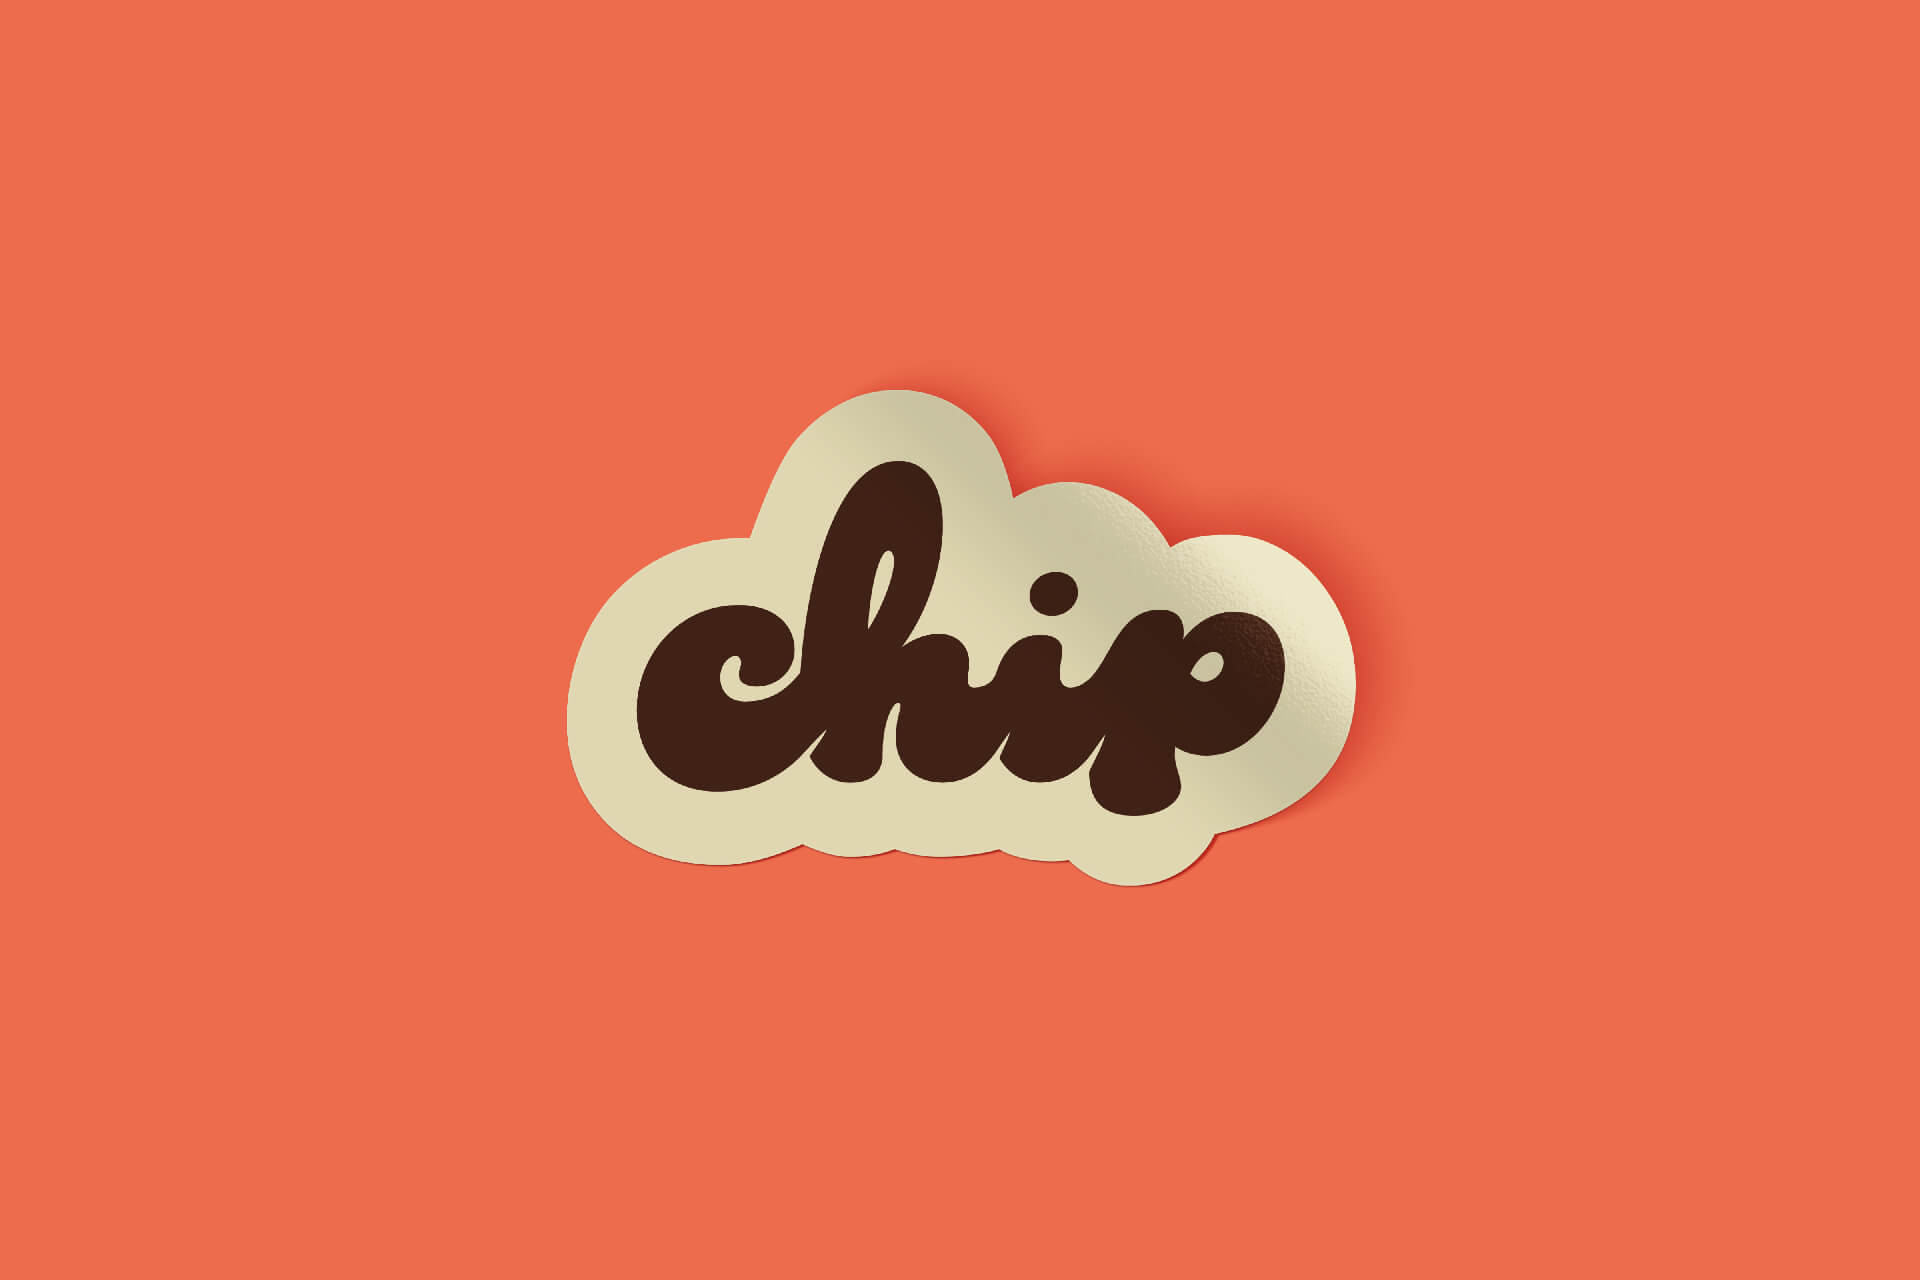 Chip NYC曲奇店品牌视觉设计